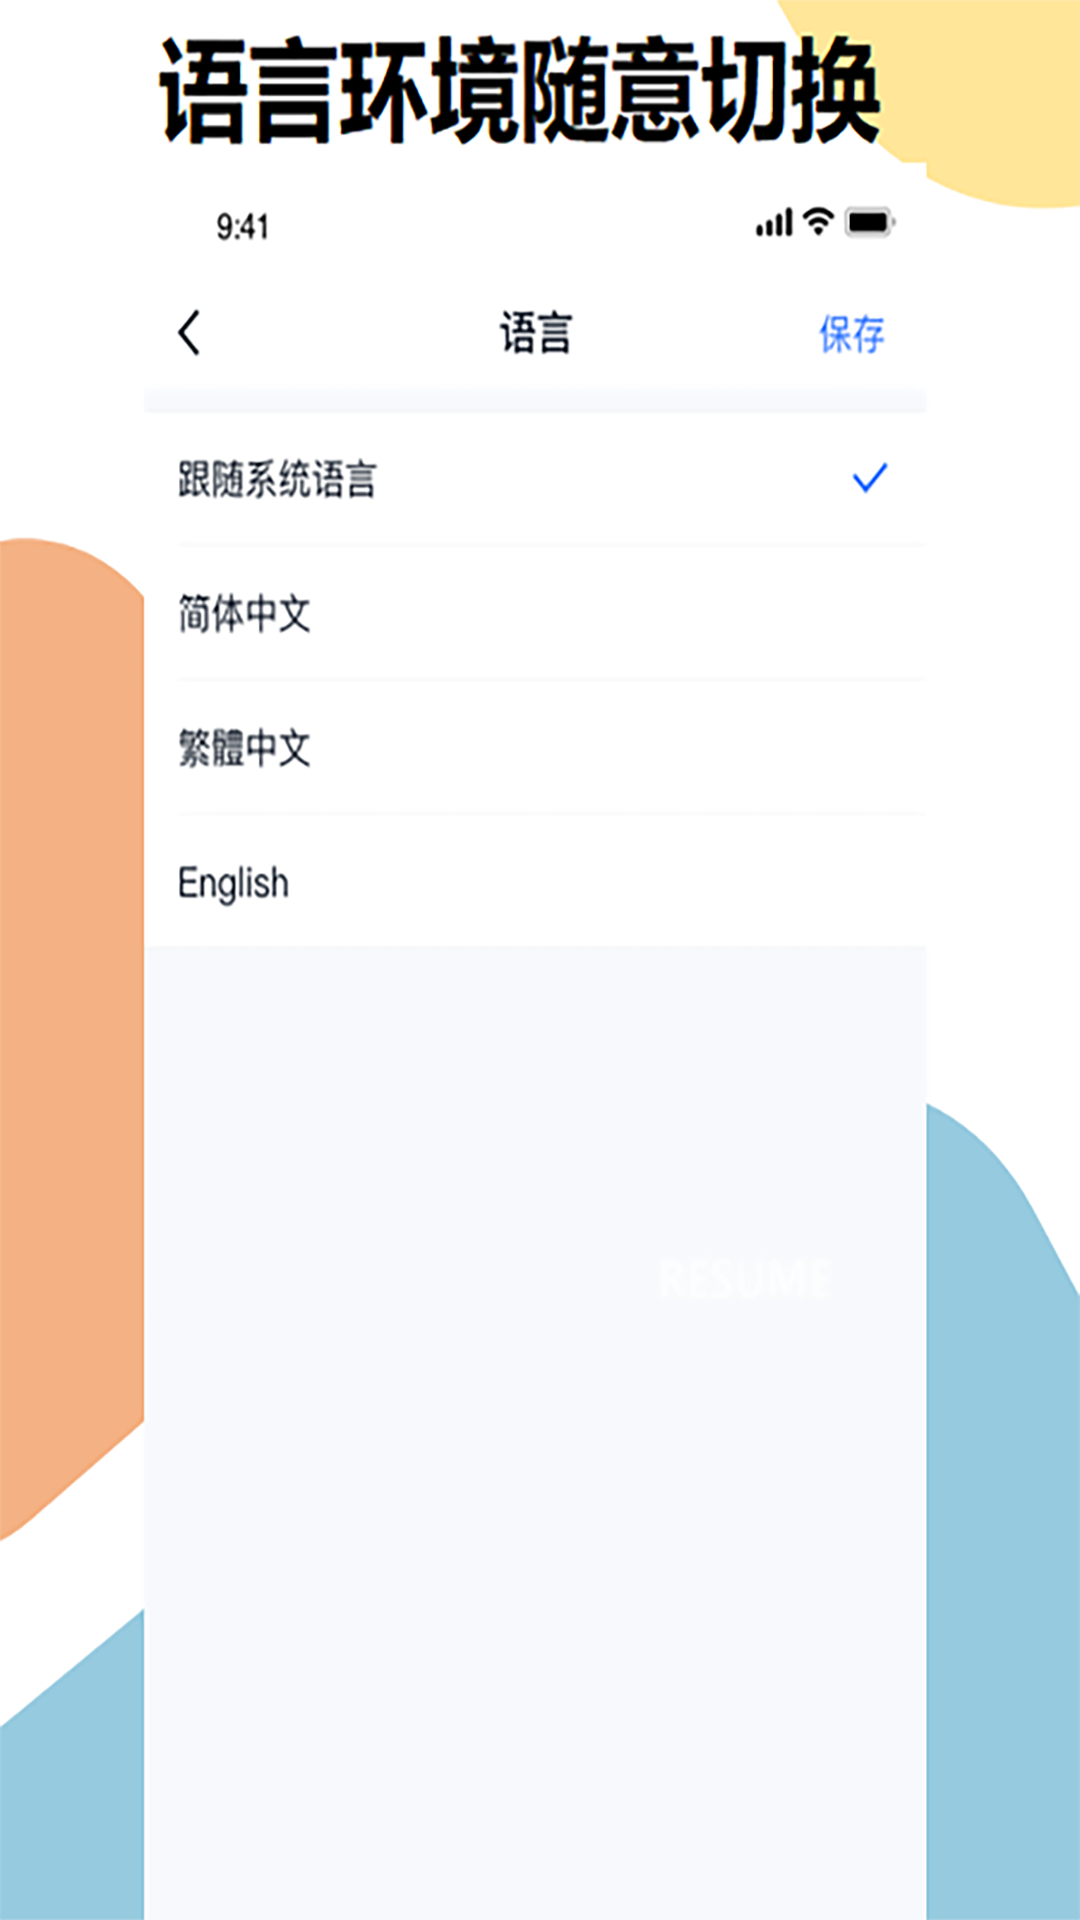 明象云app下载,明象云企业运营app官方版 v1.0.0